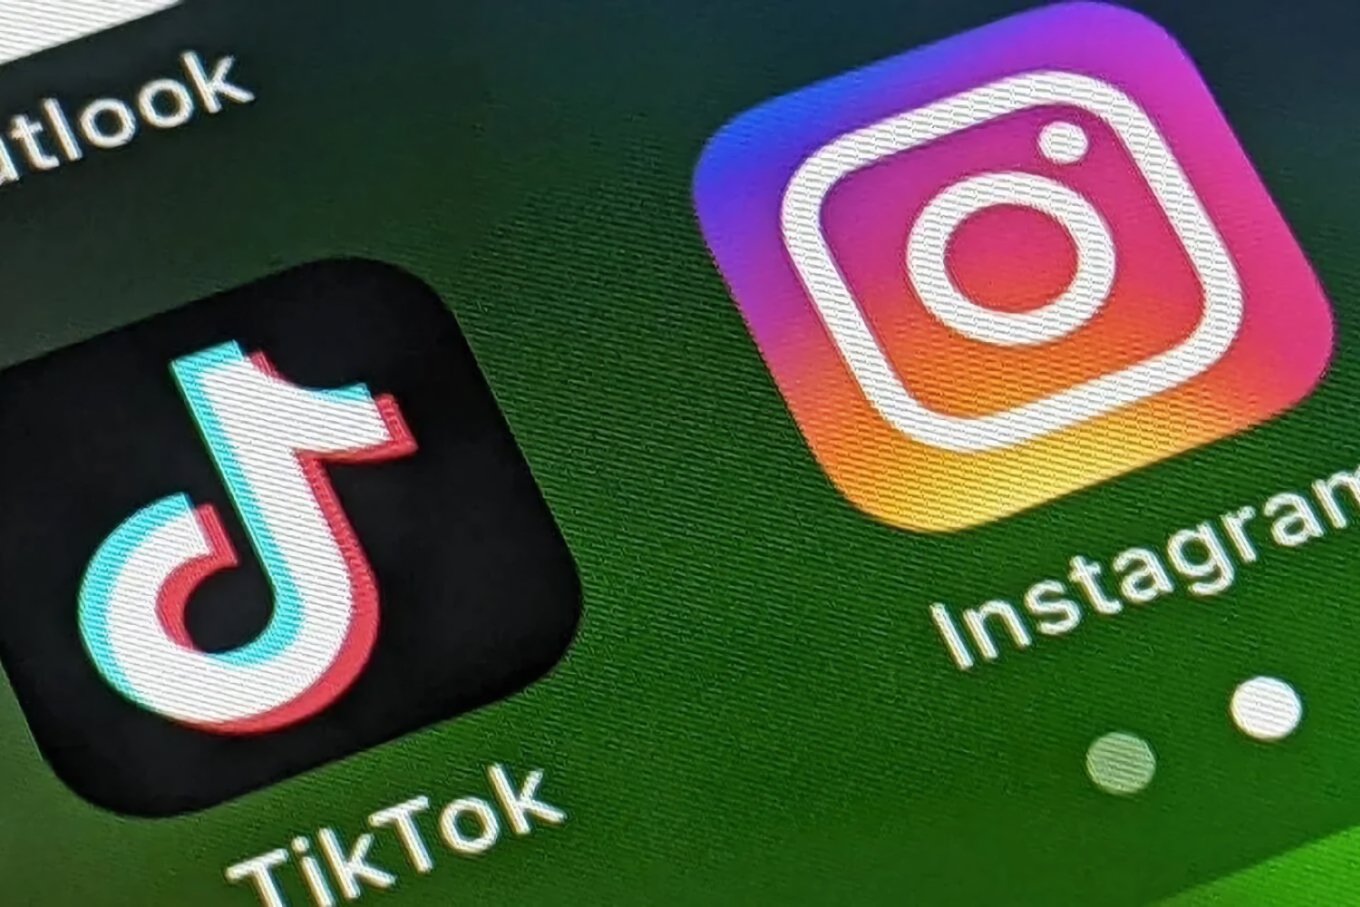 TikTok à deux doigts à lancer une application photo pour rivaliser avec Instagram